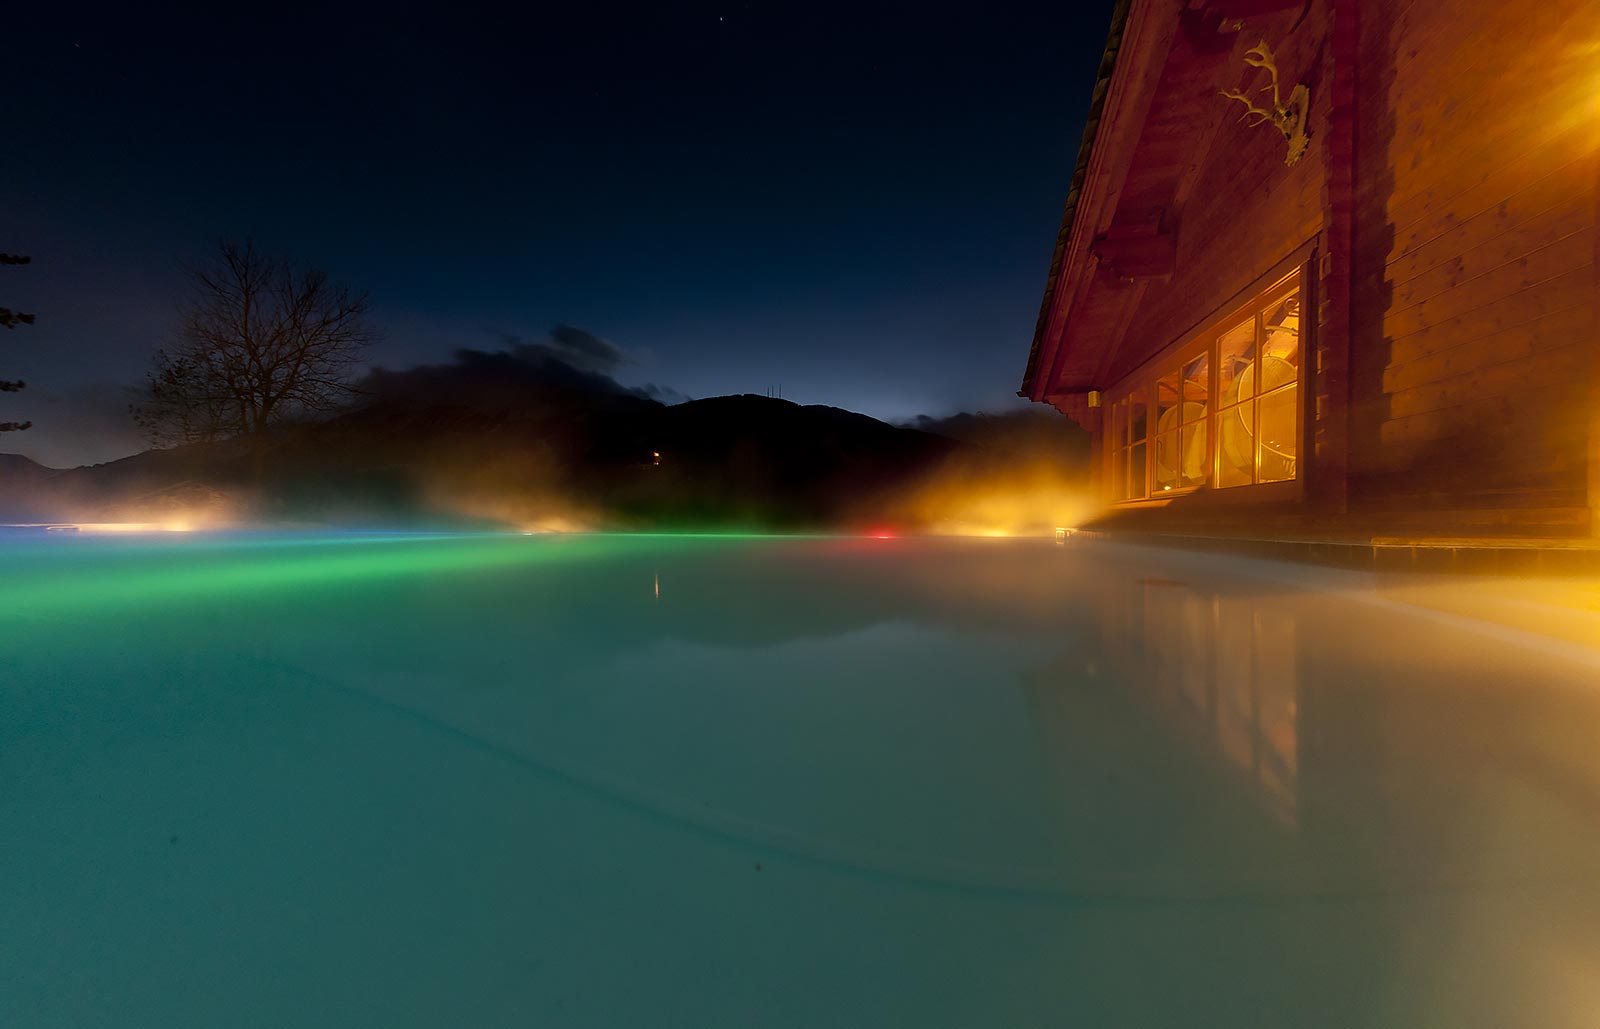 Vasca di acqua calda con luci variopinte all'esterno di una casa in legno